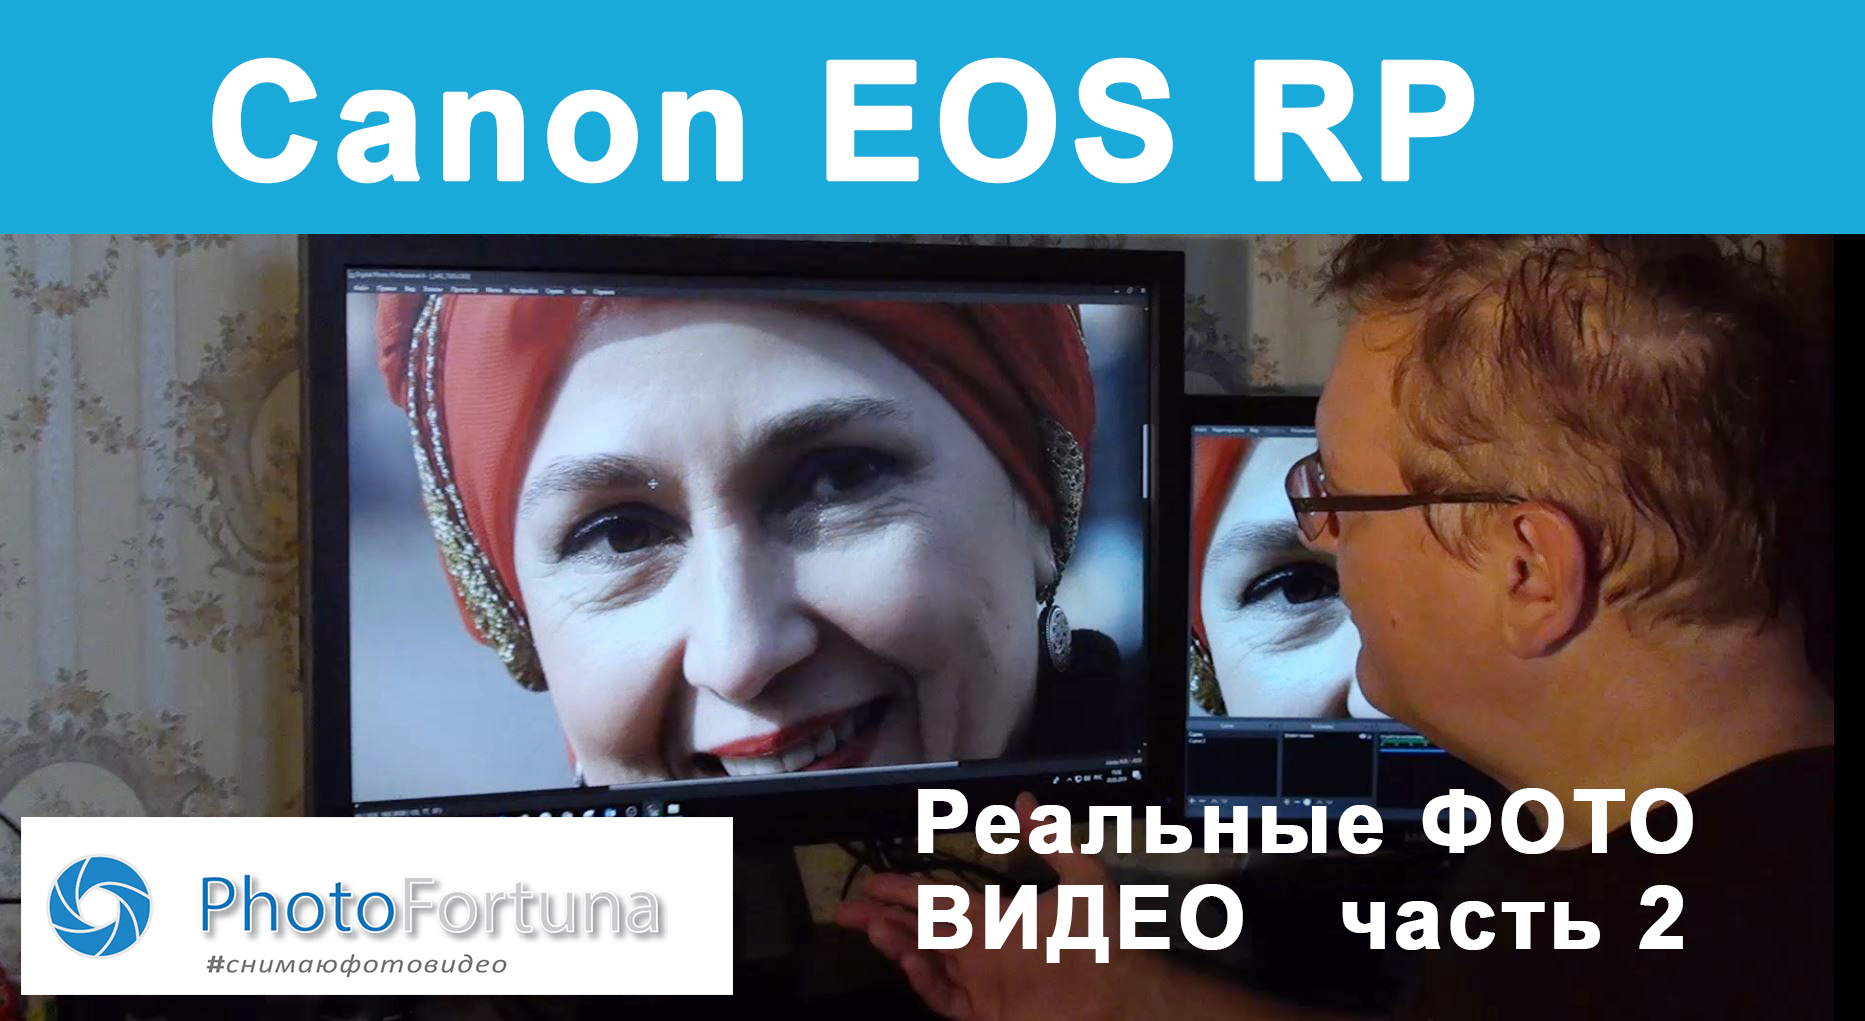 Подробнее о статье Реальный уличный Тест Canon EOS RP в Москве